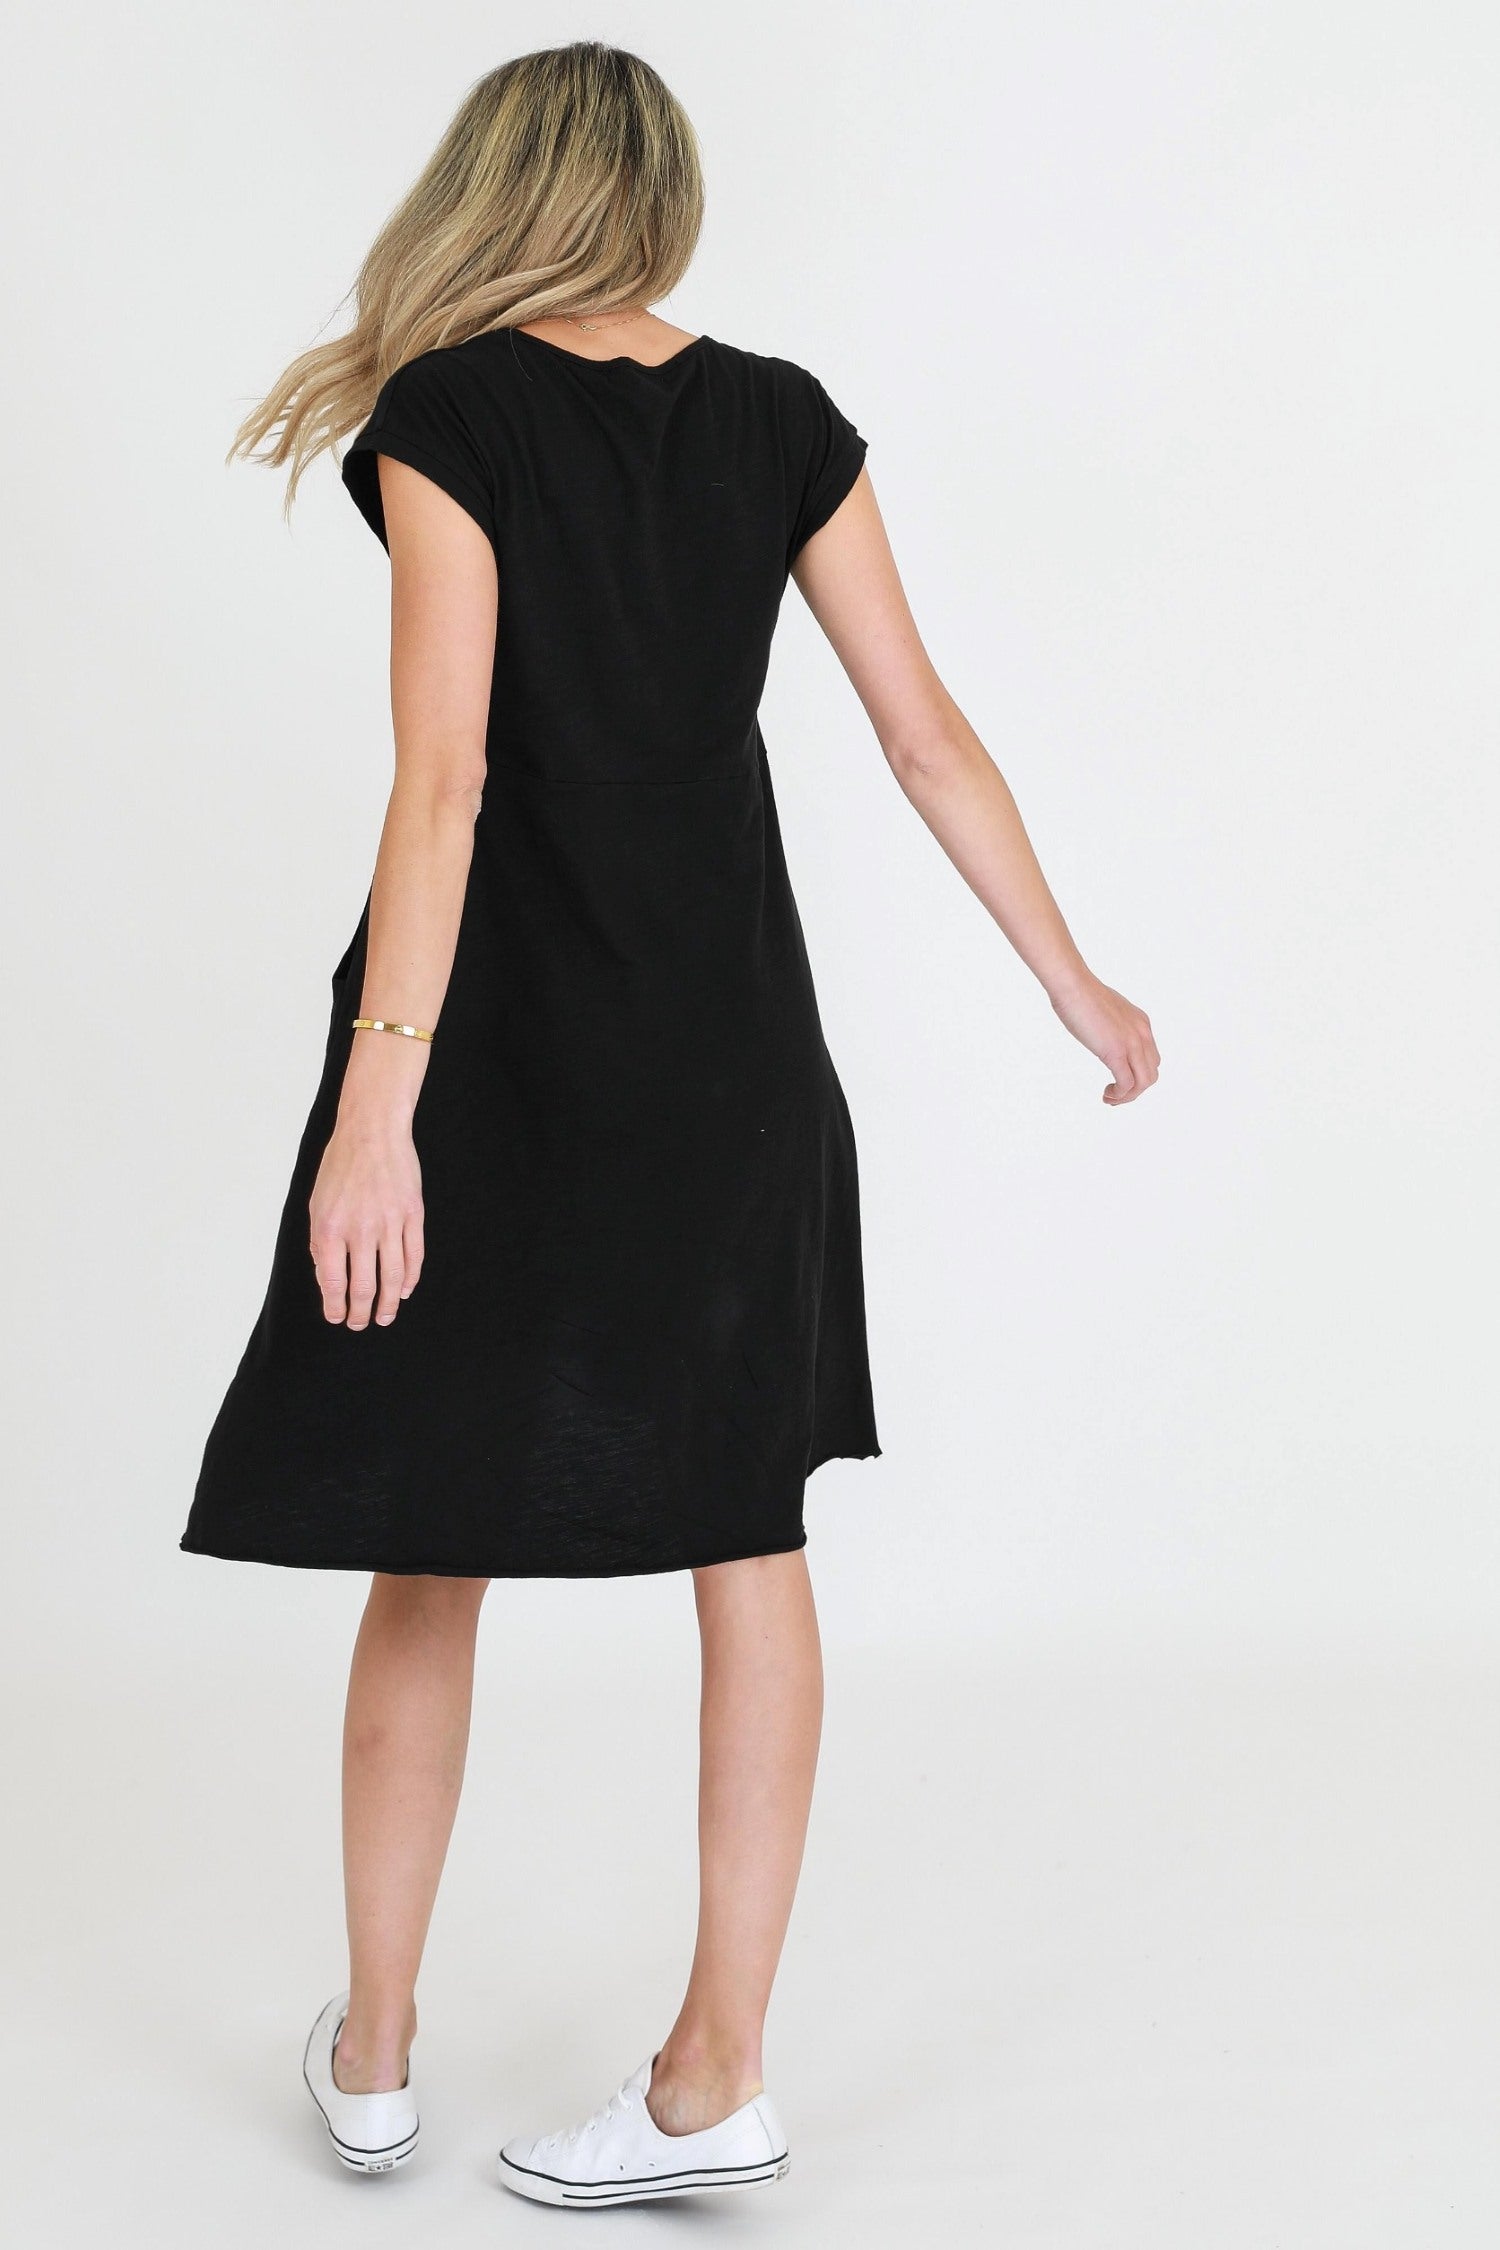 shift dresses for mature ladies #color_black